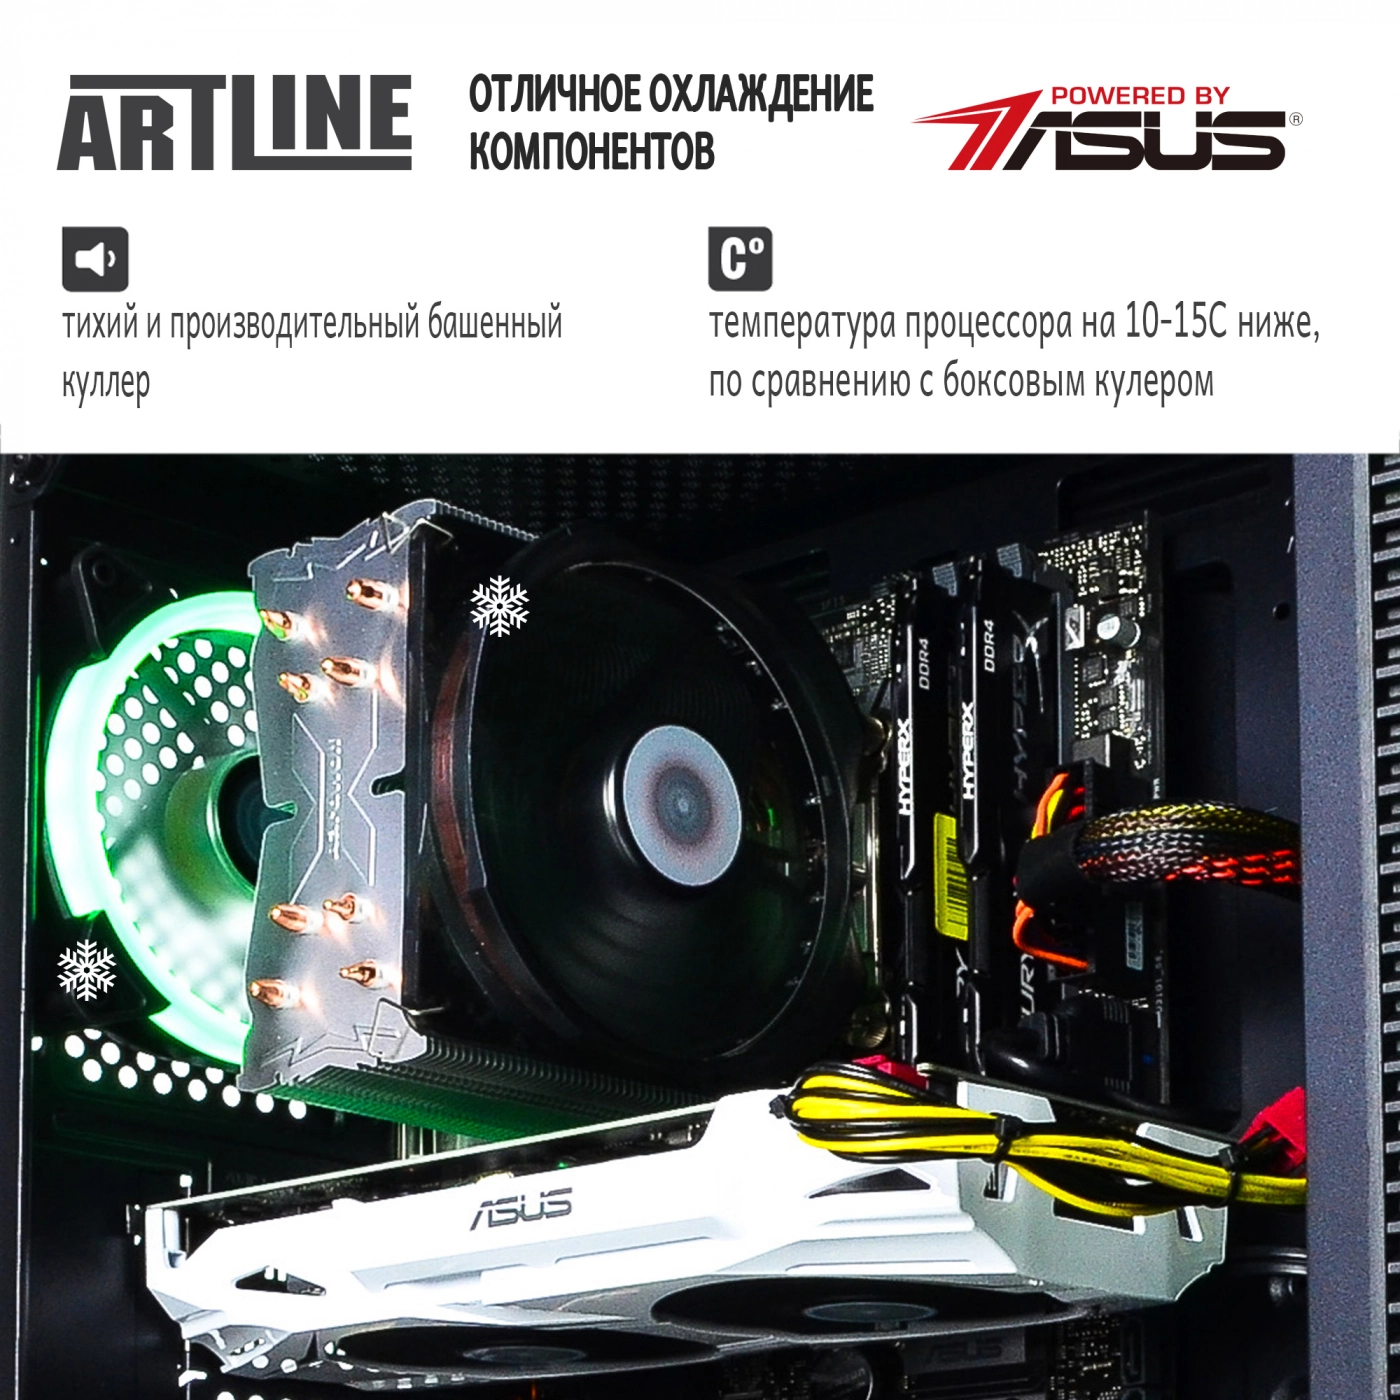 Купить Компьютер ARTLINE Gaming X73v15 - фото 3